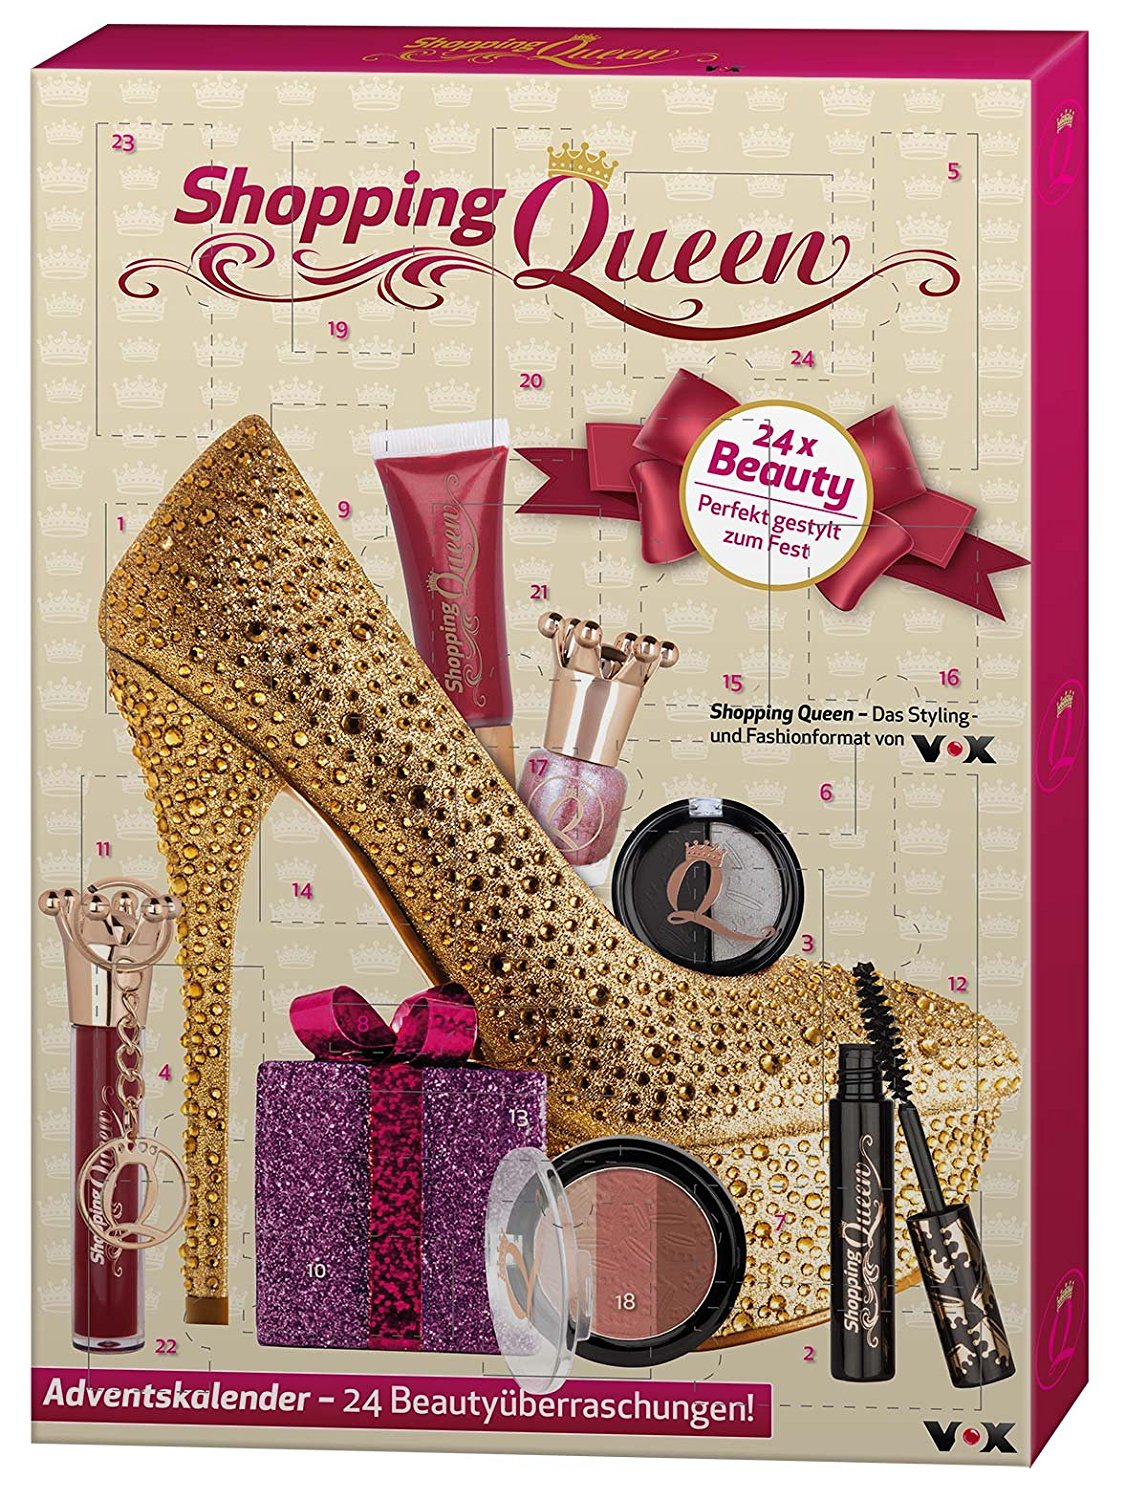 Shopping Queen Beauty Adventskalender